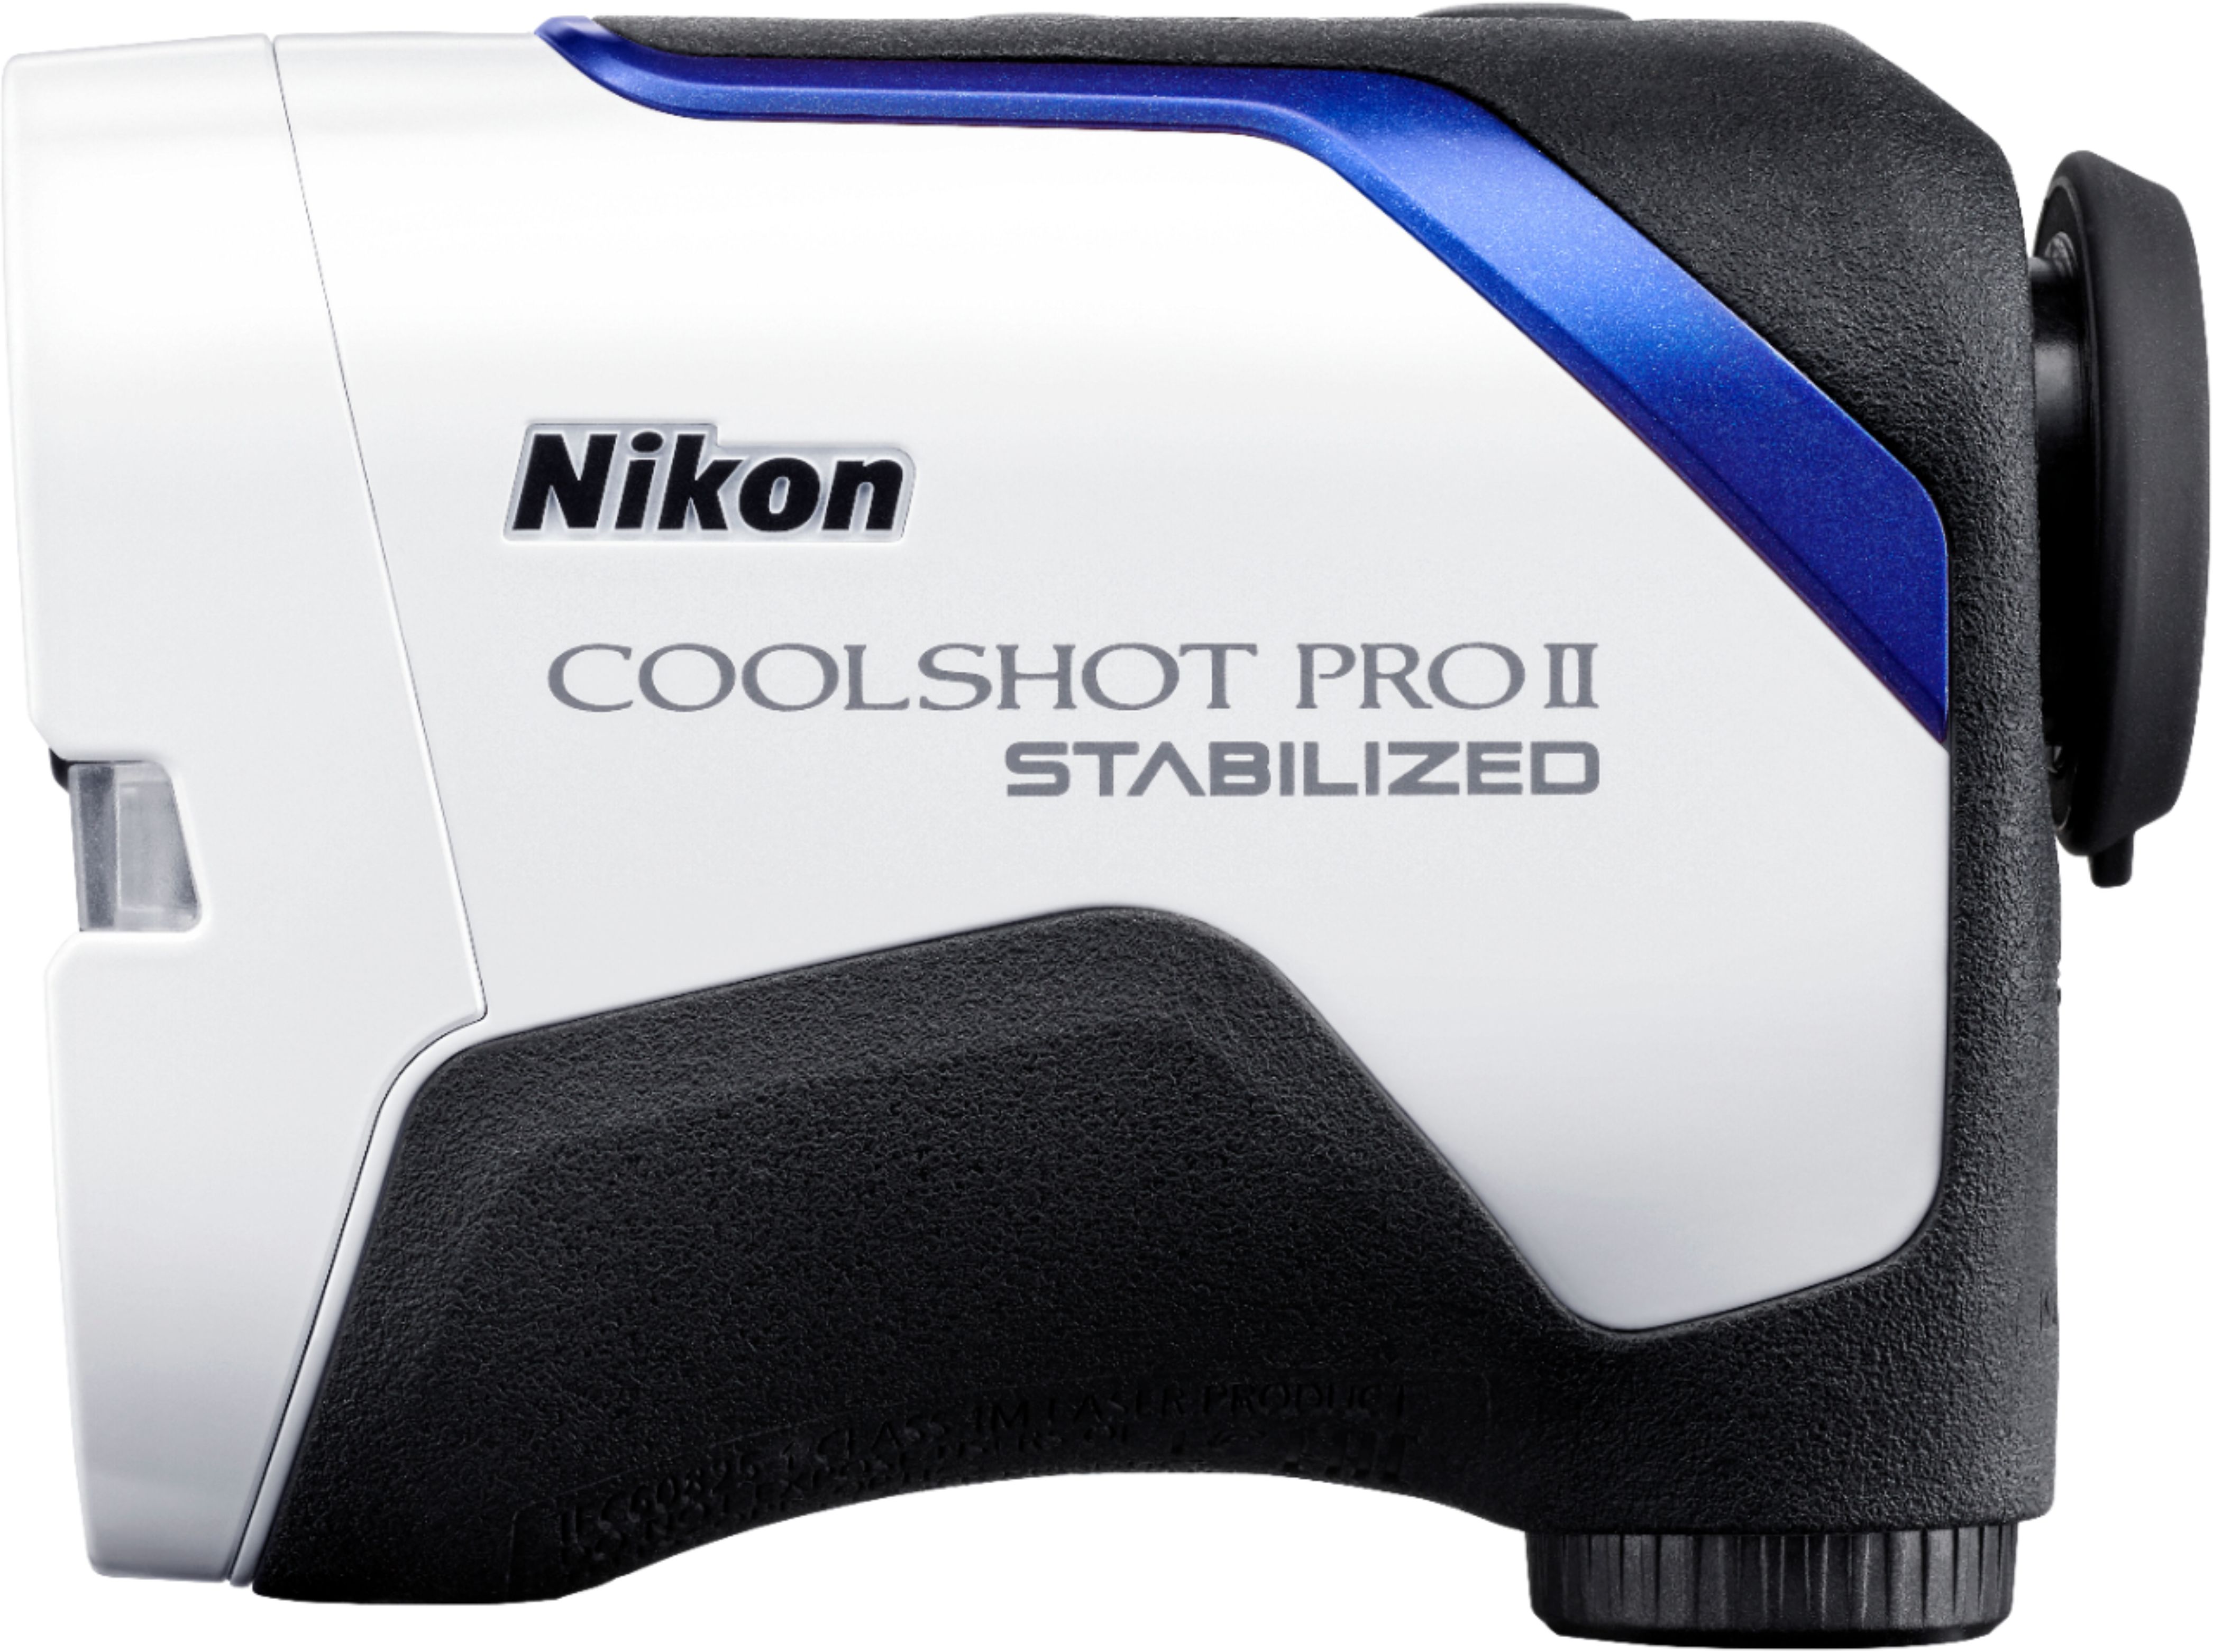 Best Buy: Nikon Coolshot ProII Stabilized Golf Laser Rangefinder